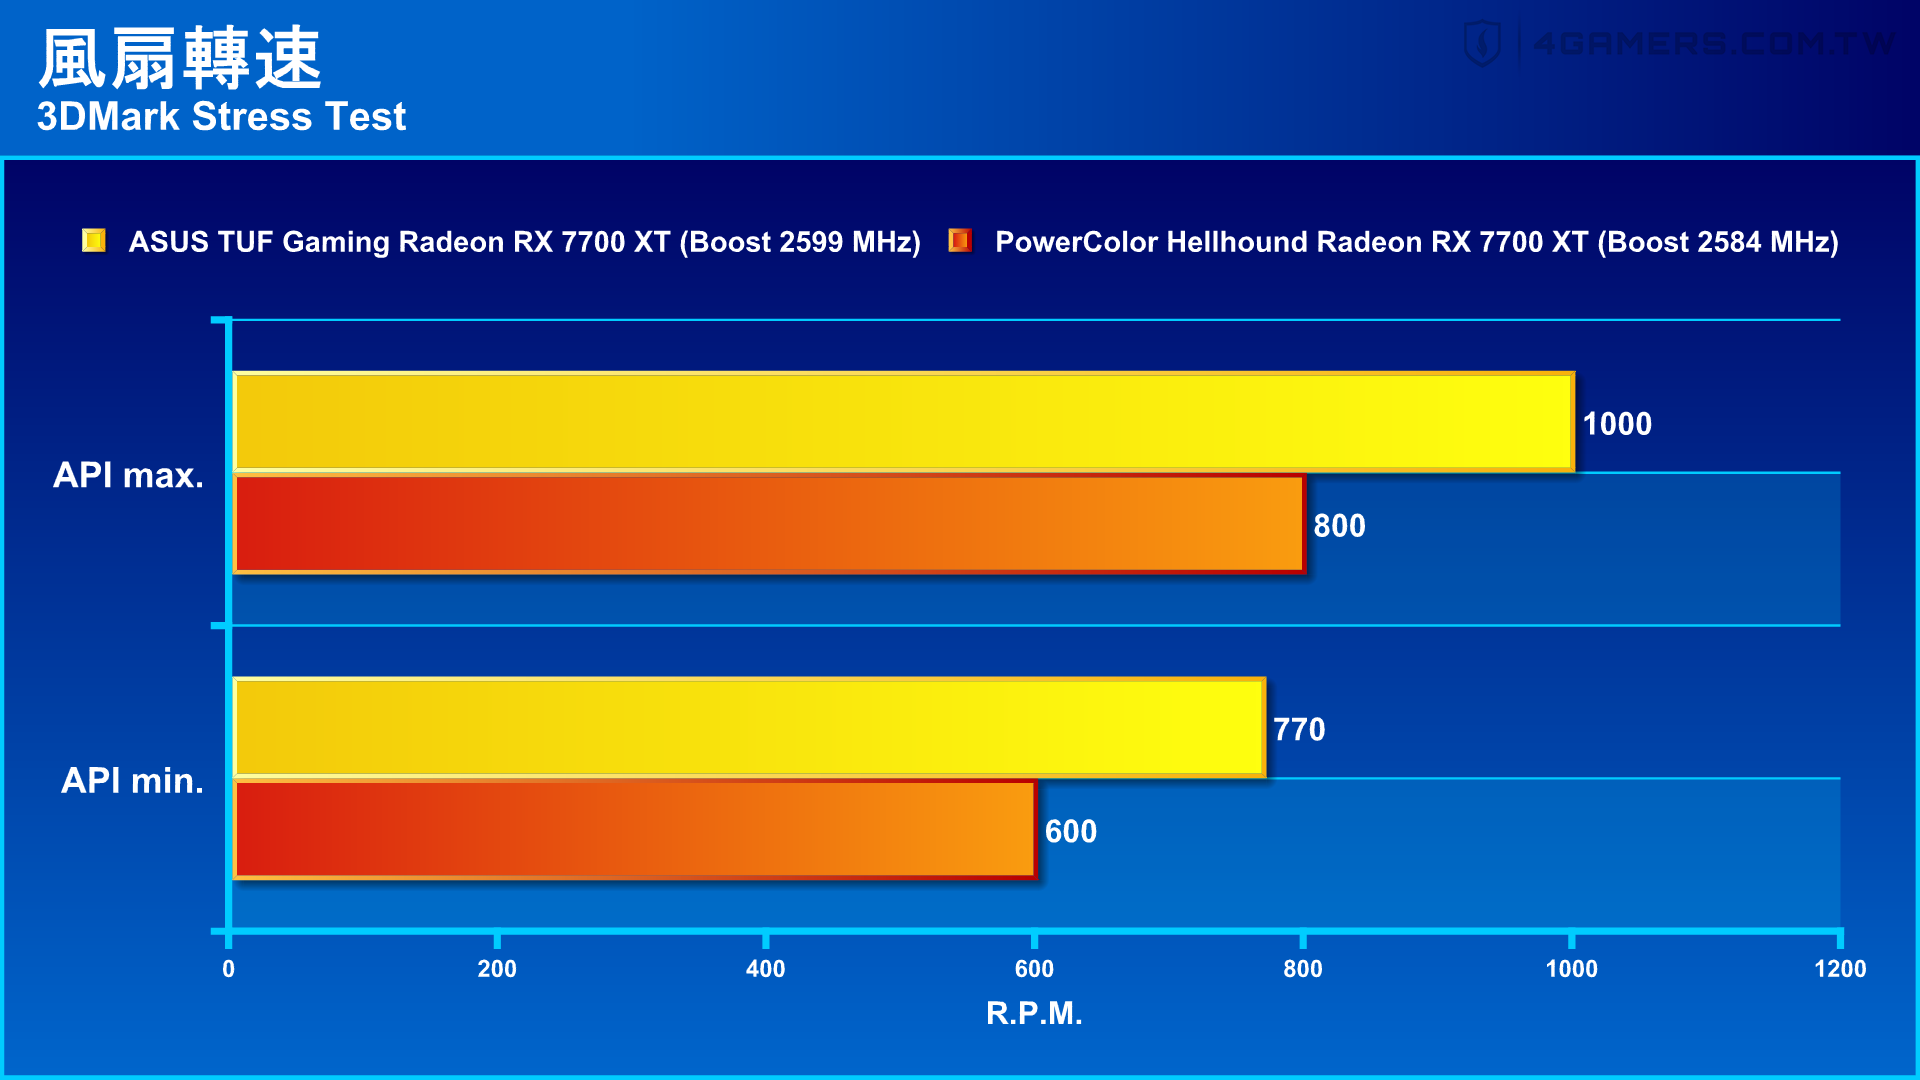 ASUS TUF Gaming Radeon RX 7700 XT OC Edition